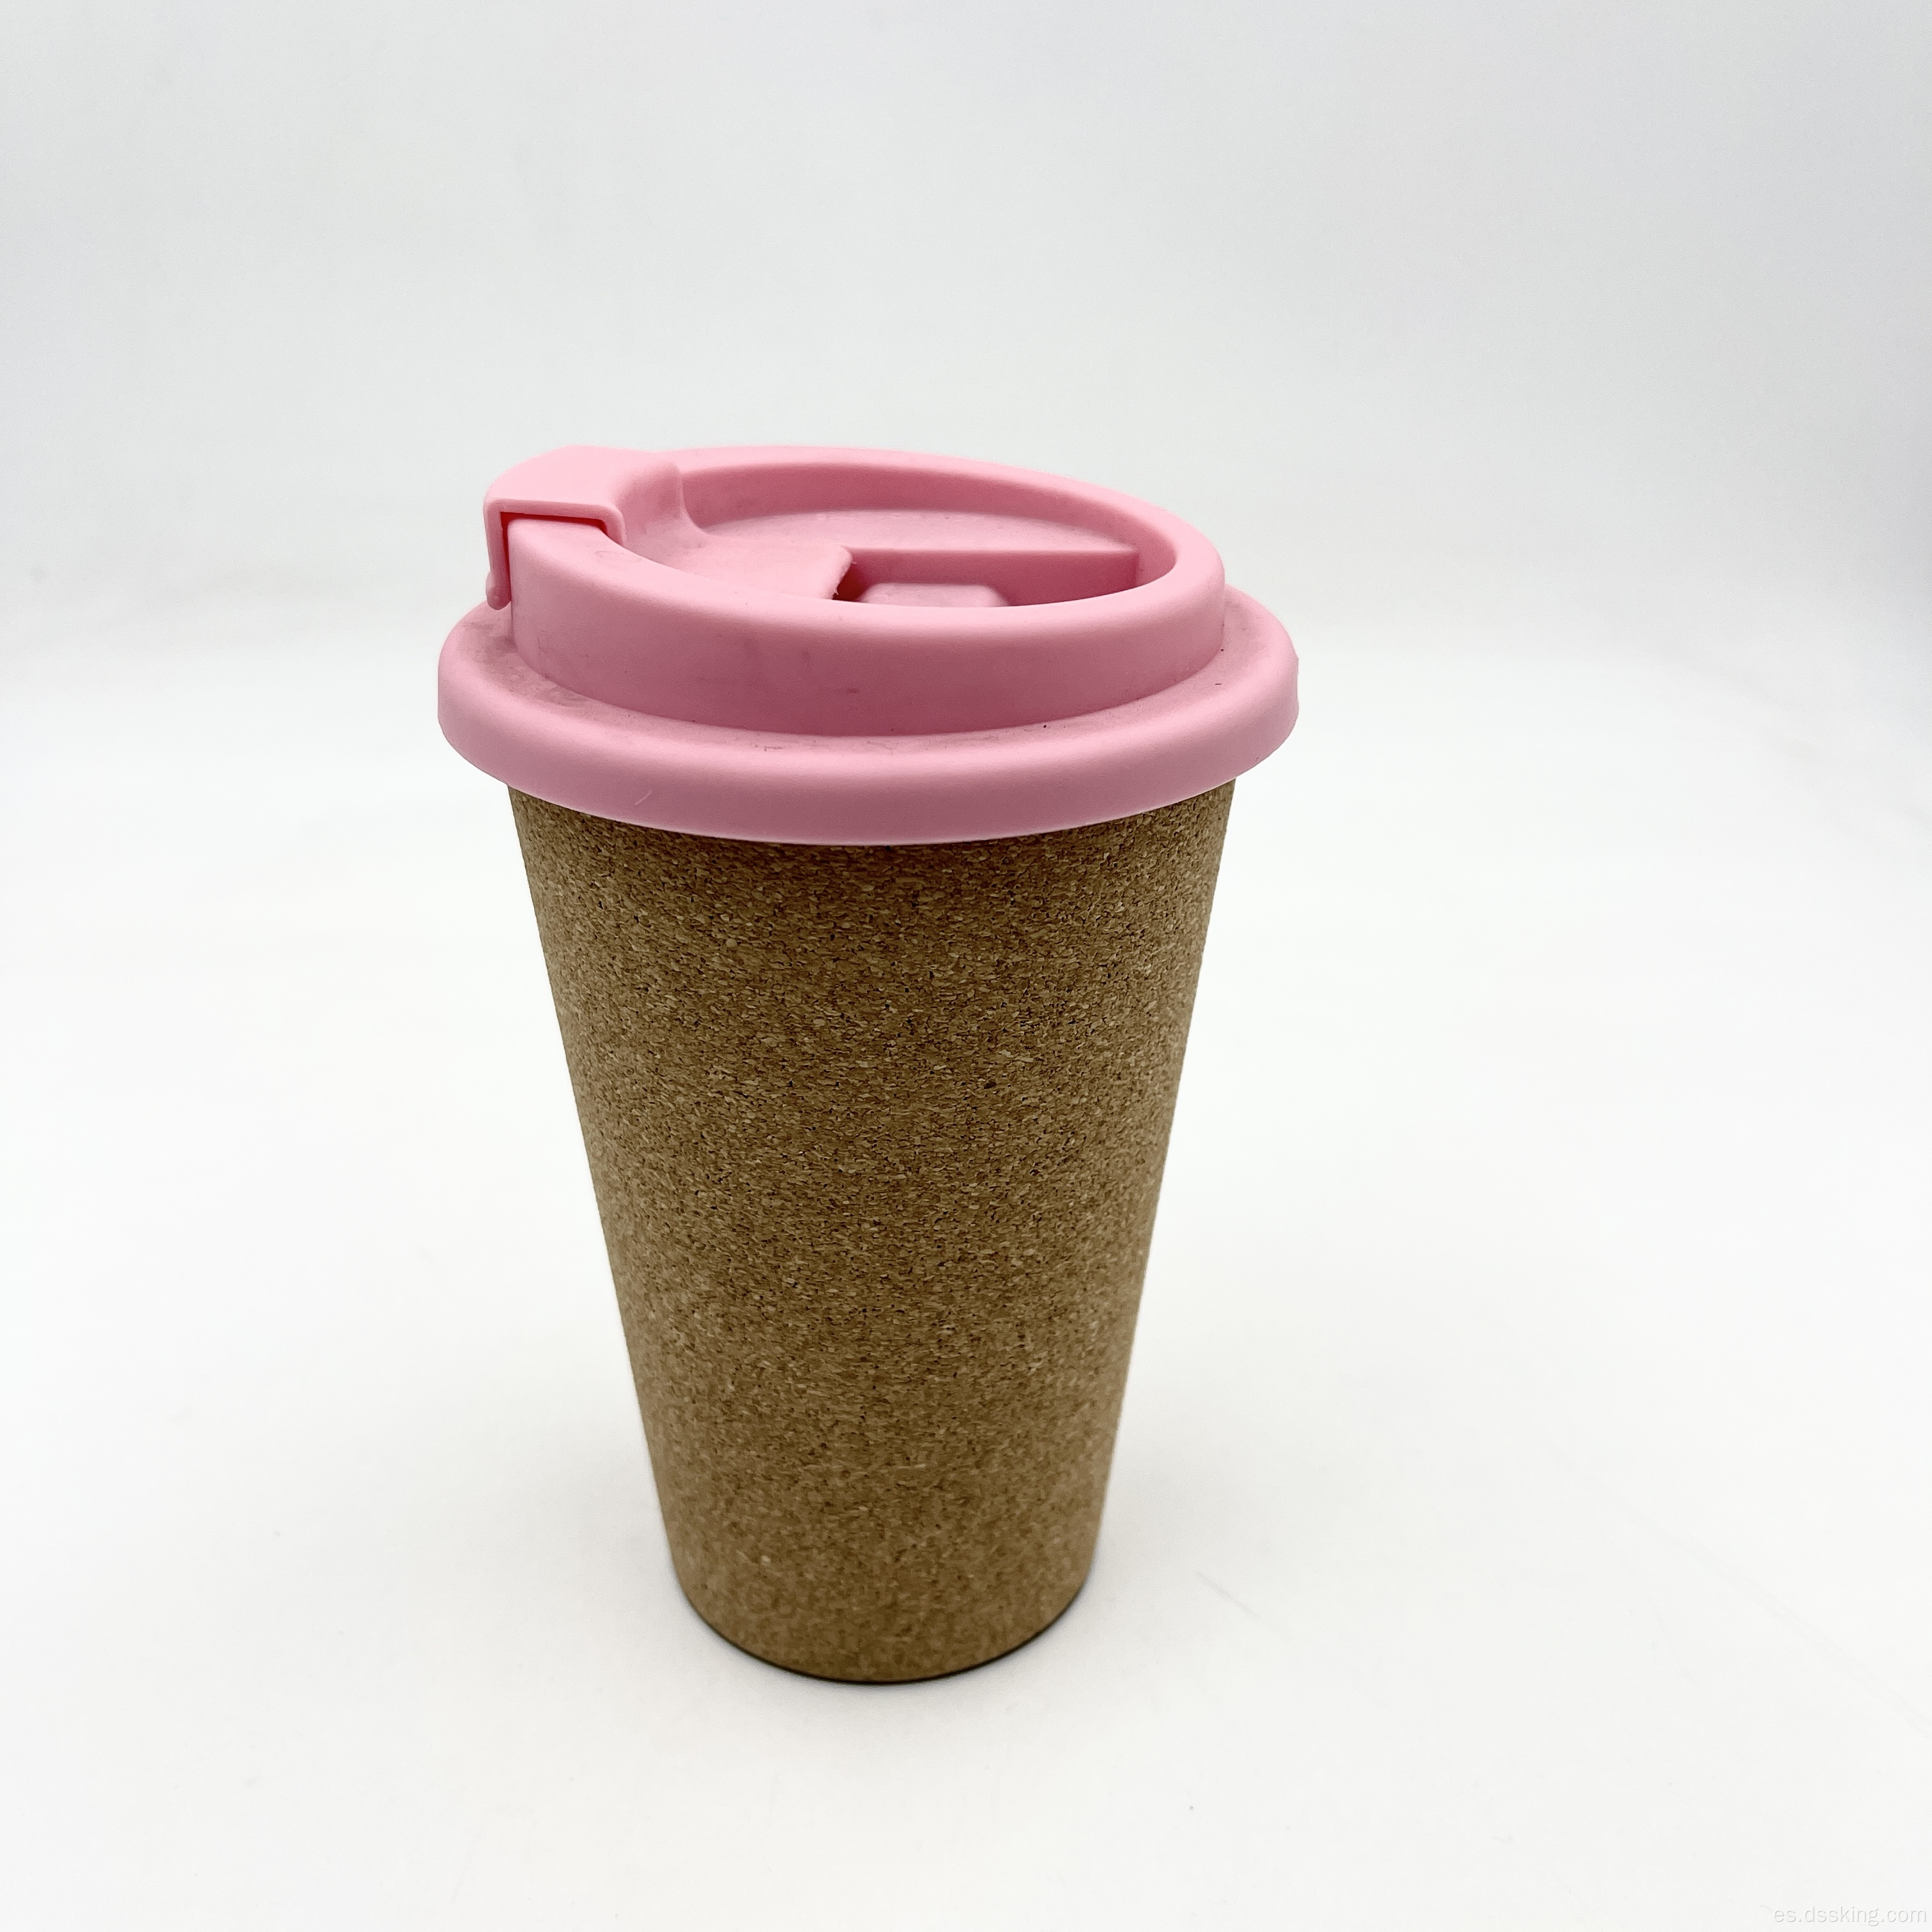 Logotipo personalizado reutilizable ecológico BPA gratis Cork Cafe Cafe con tapa